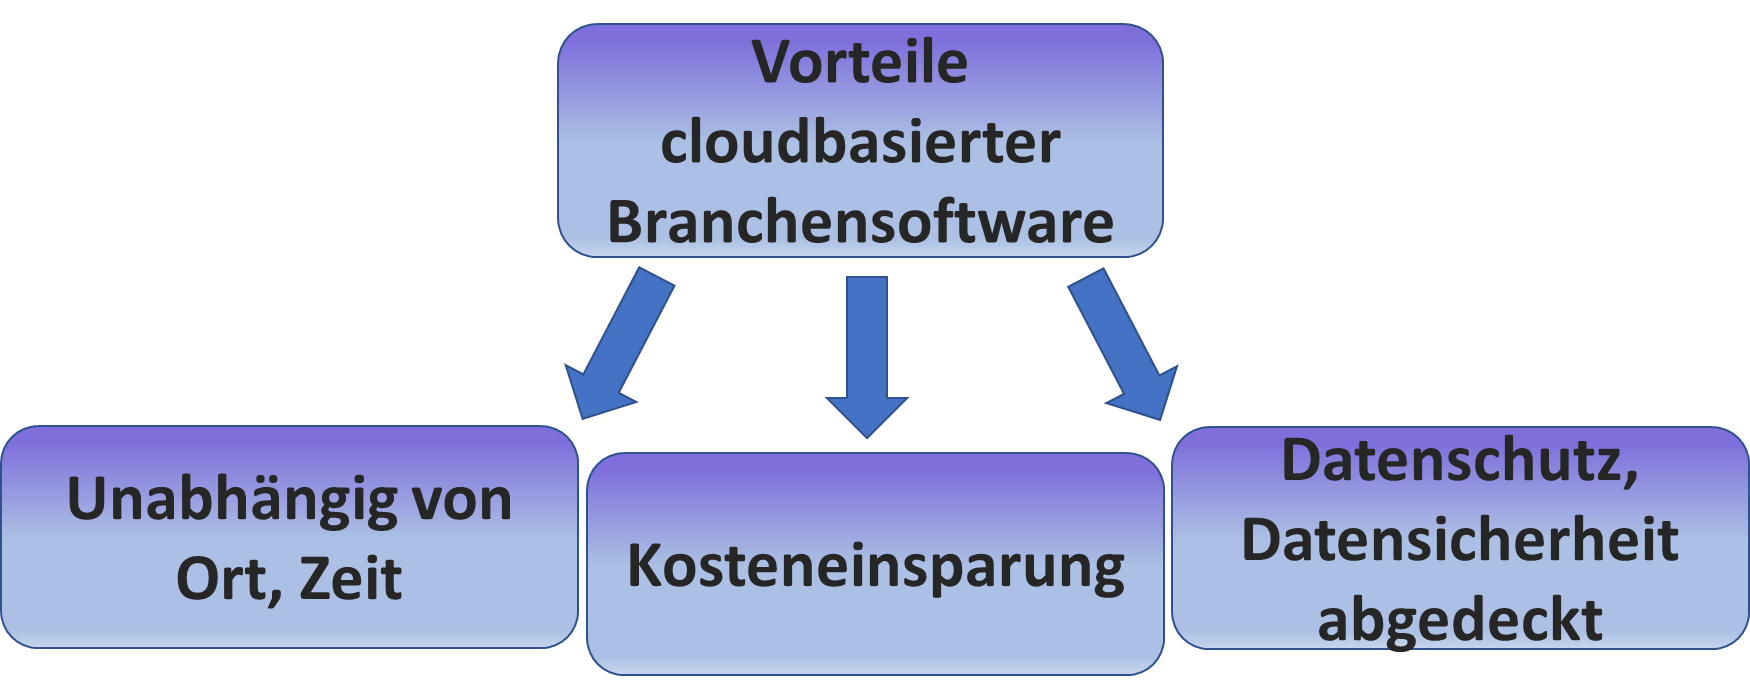 Vorteile cloudbasierter Branchensoftware